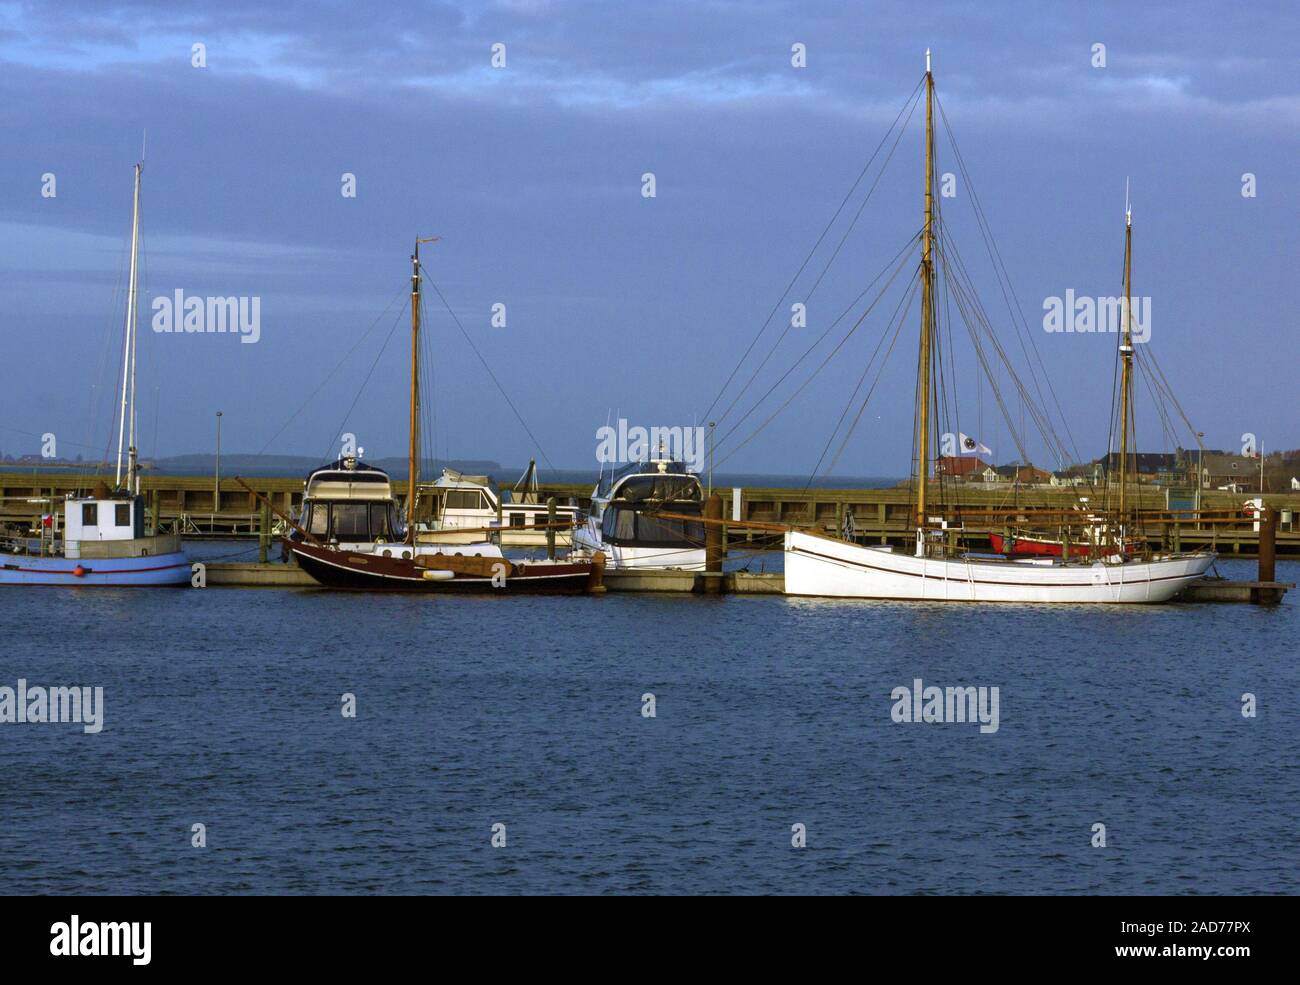 Sailing, fishing ships at bay Stock Photo